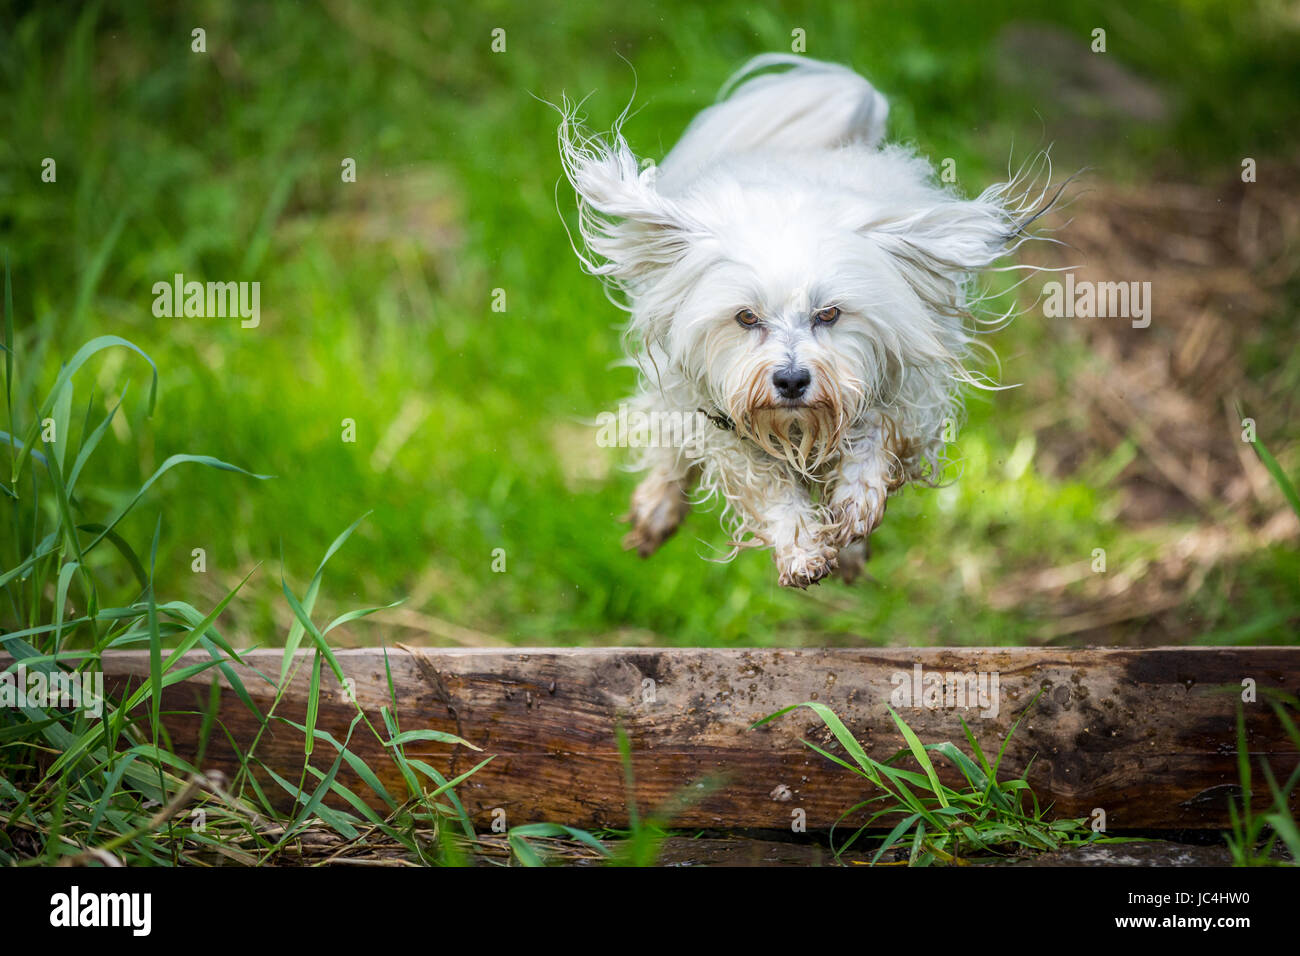 Kleiner weißer Hund springt über eine Baumstamm Stock Photo - Alamy